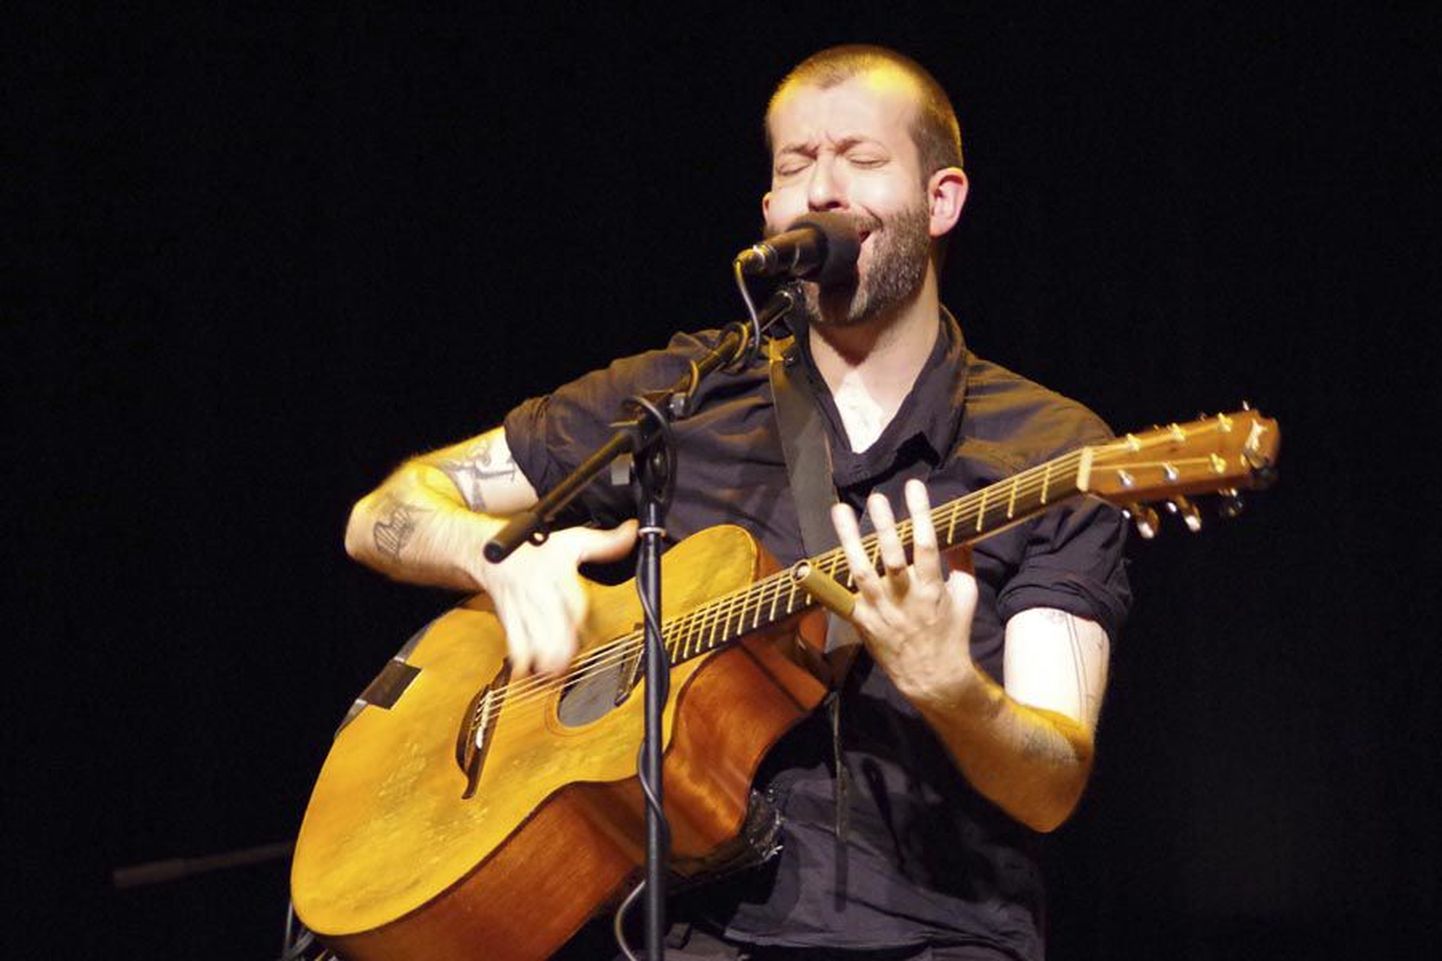 Briti muusik Jon Gomm andis kitarrifestivali ajal pärimusmuusika aidas suurepärase kontserdi.